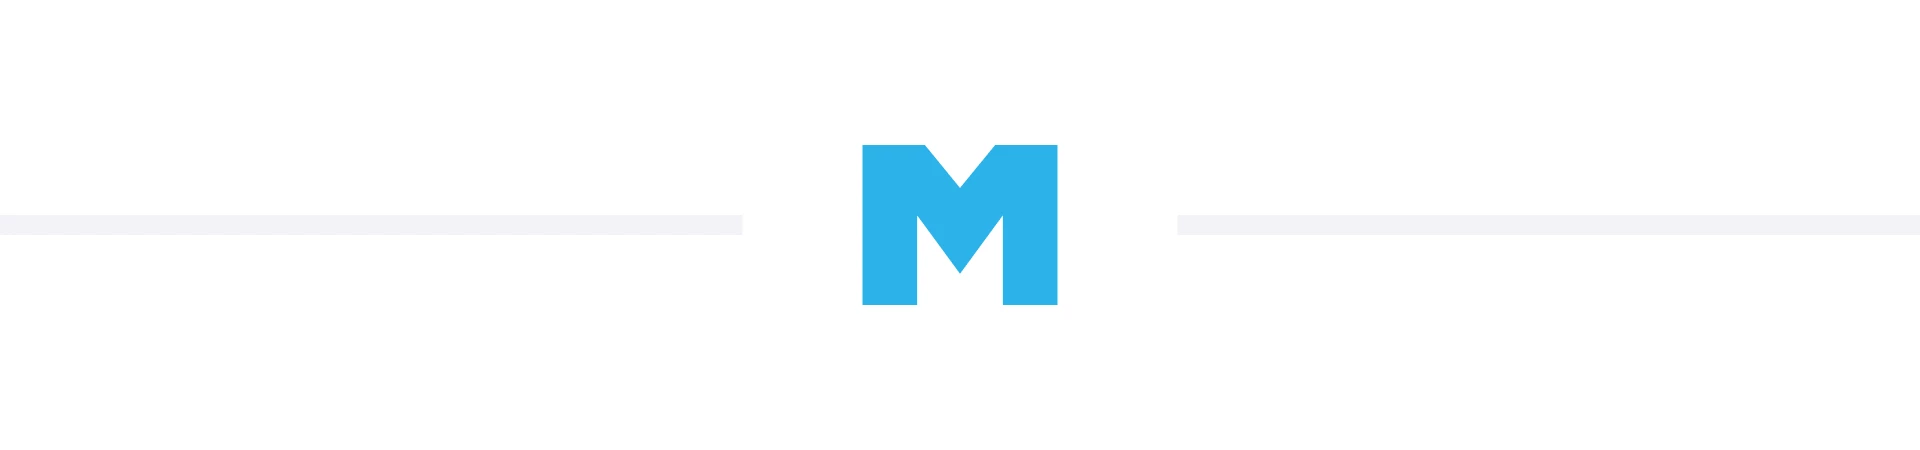 Blue Mailster logo